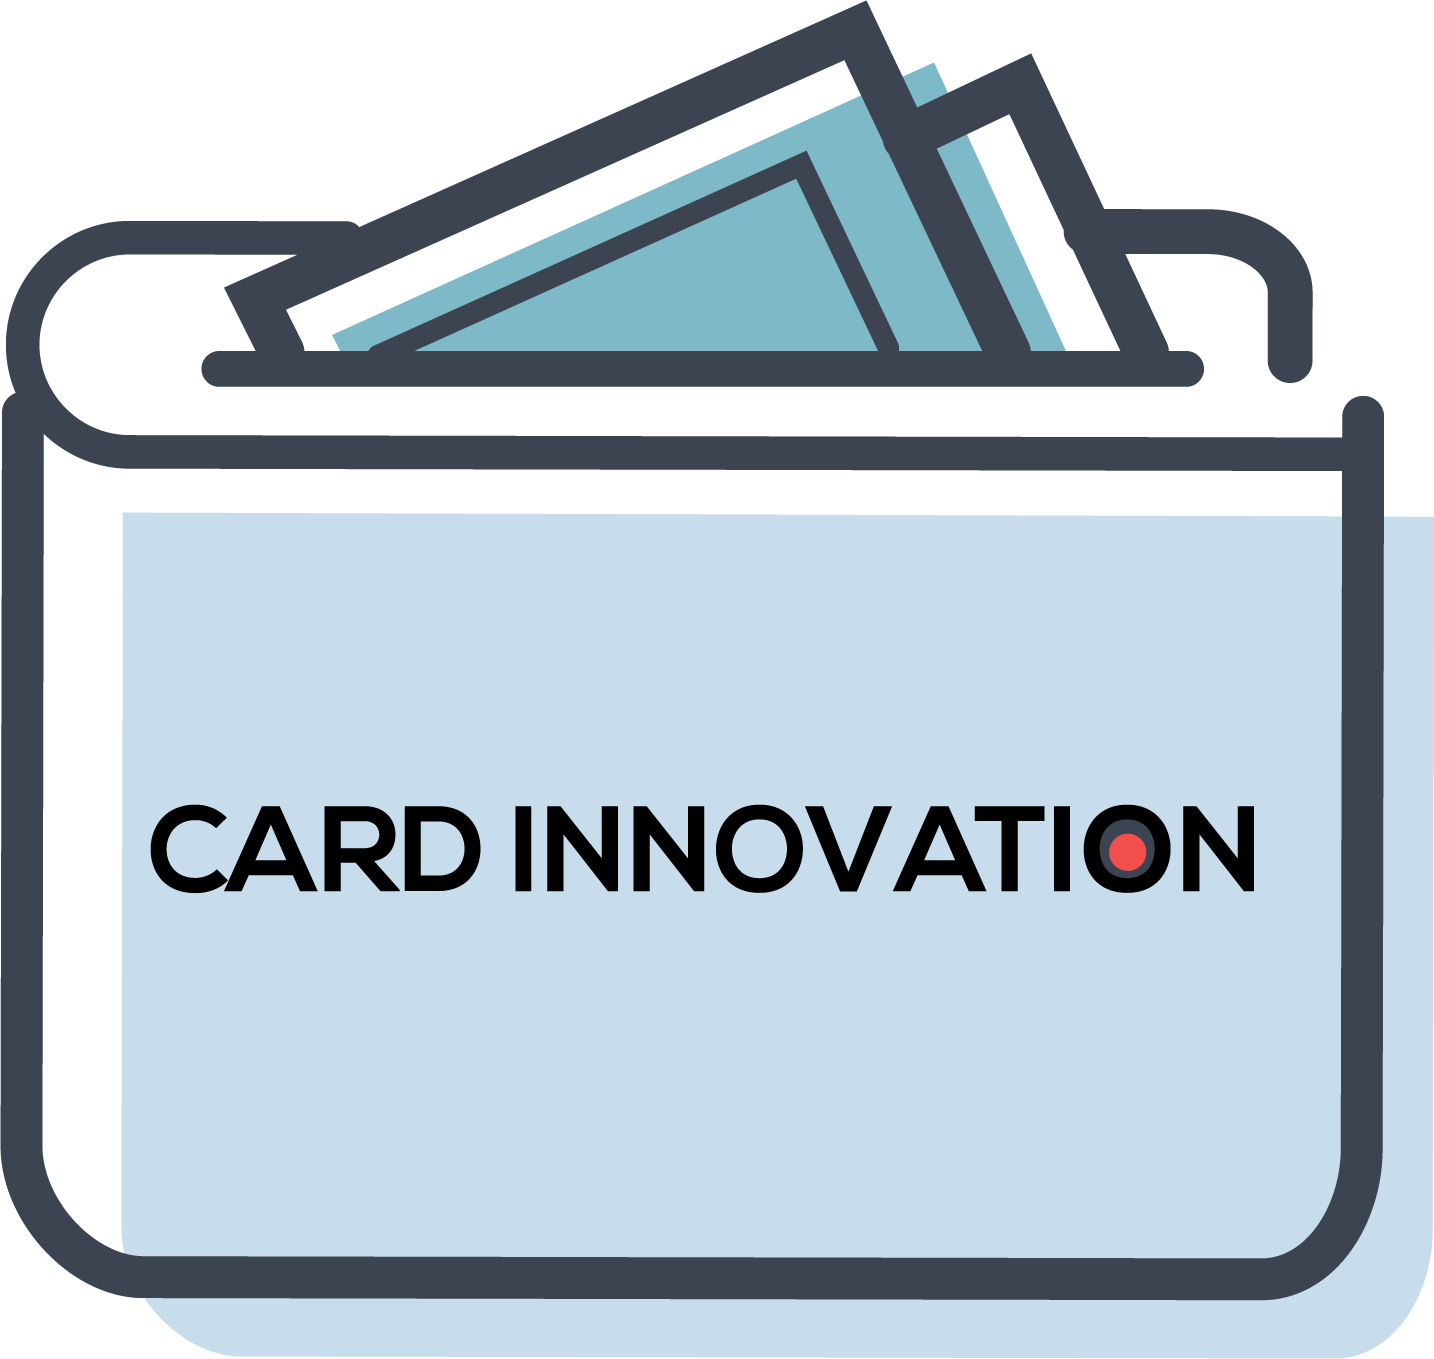 Card Innovation